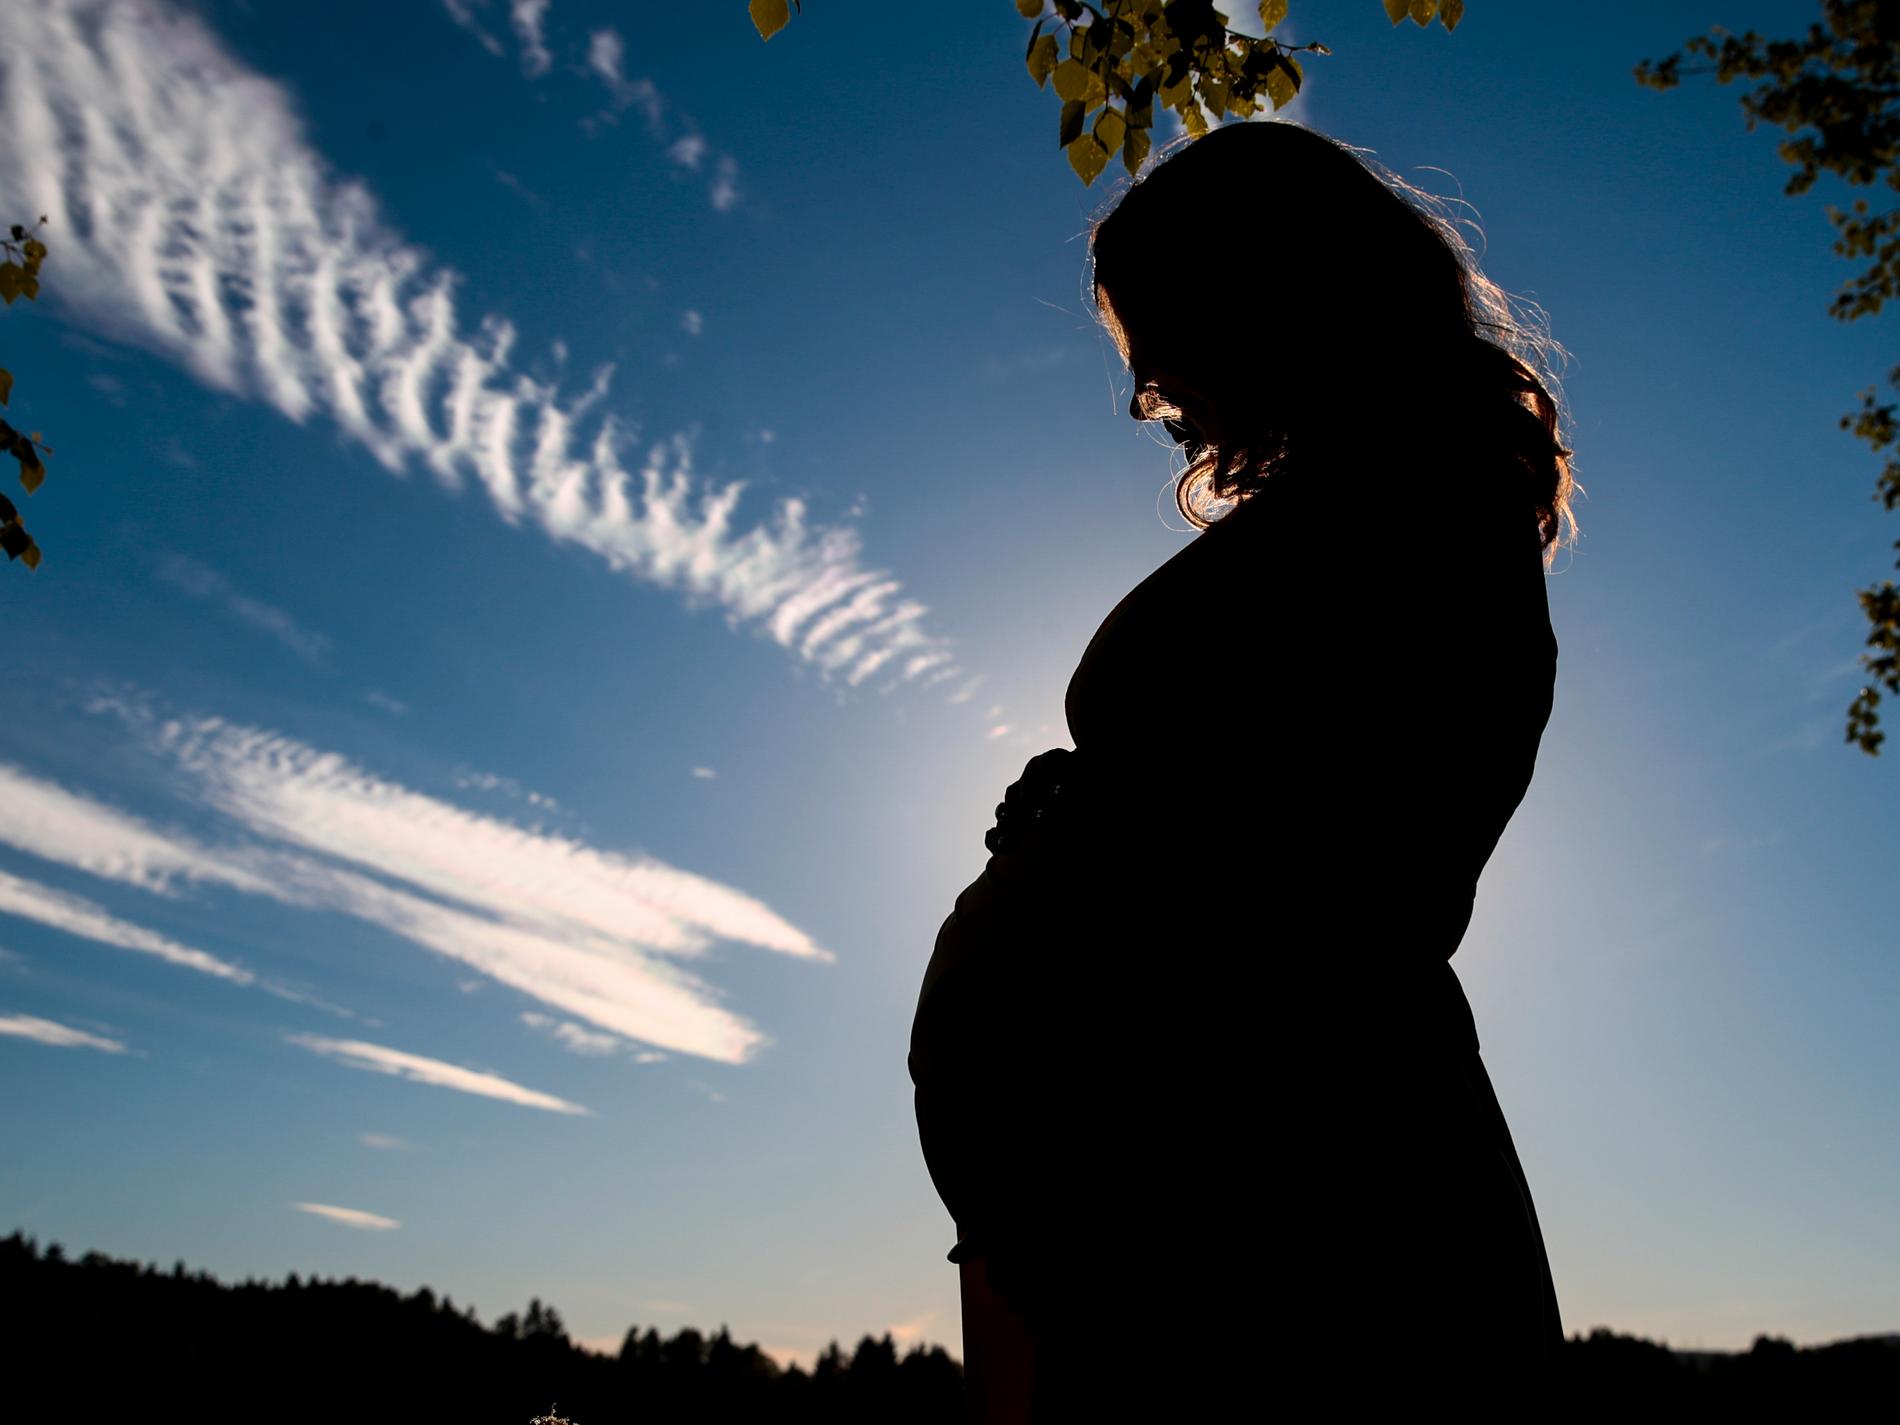 Tusentals gravida ryskor väcker oro i Argentina